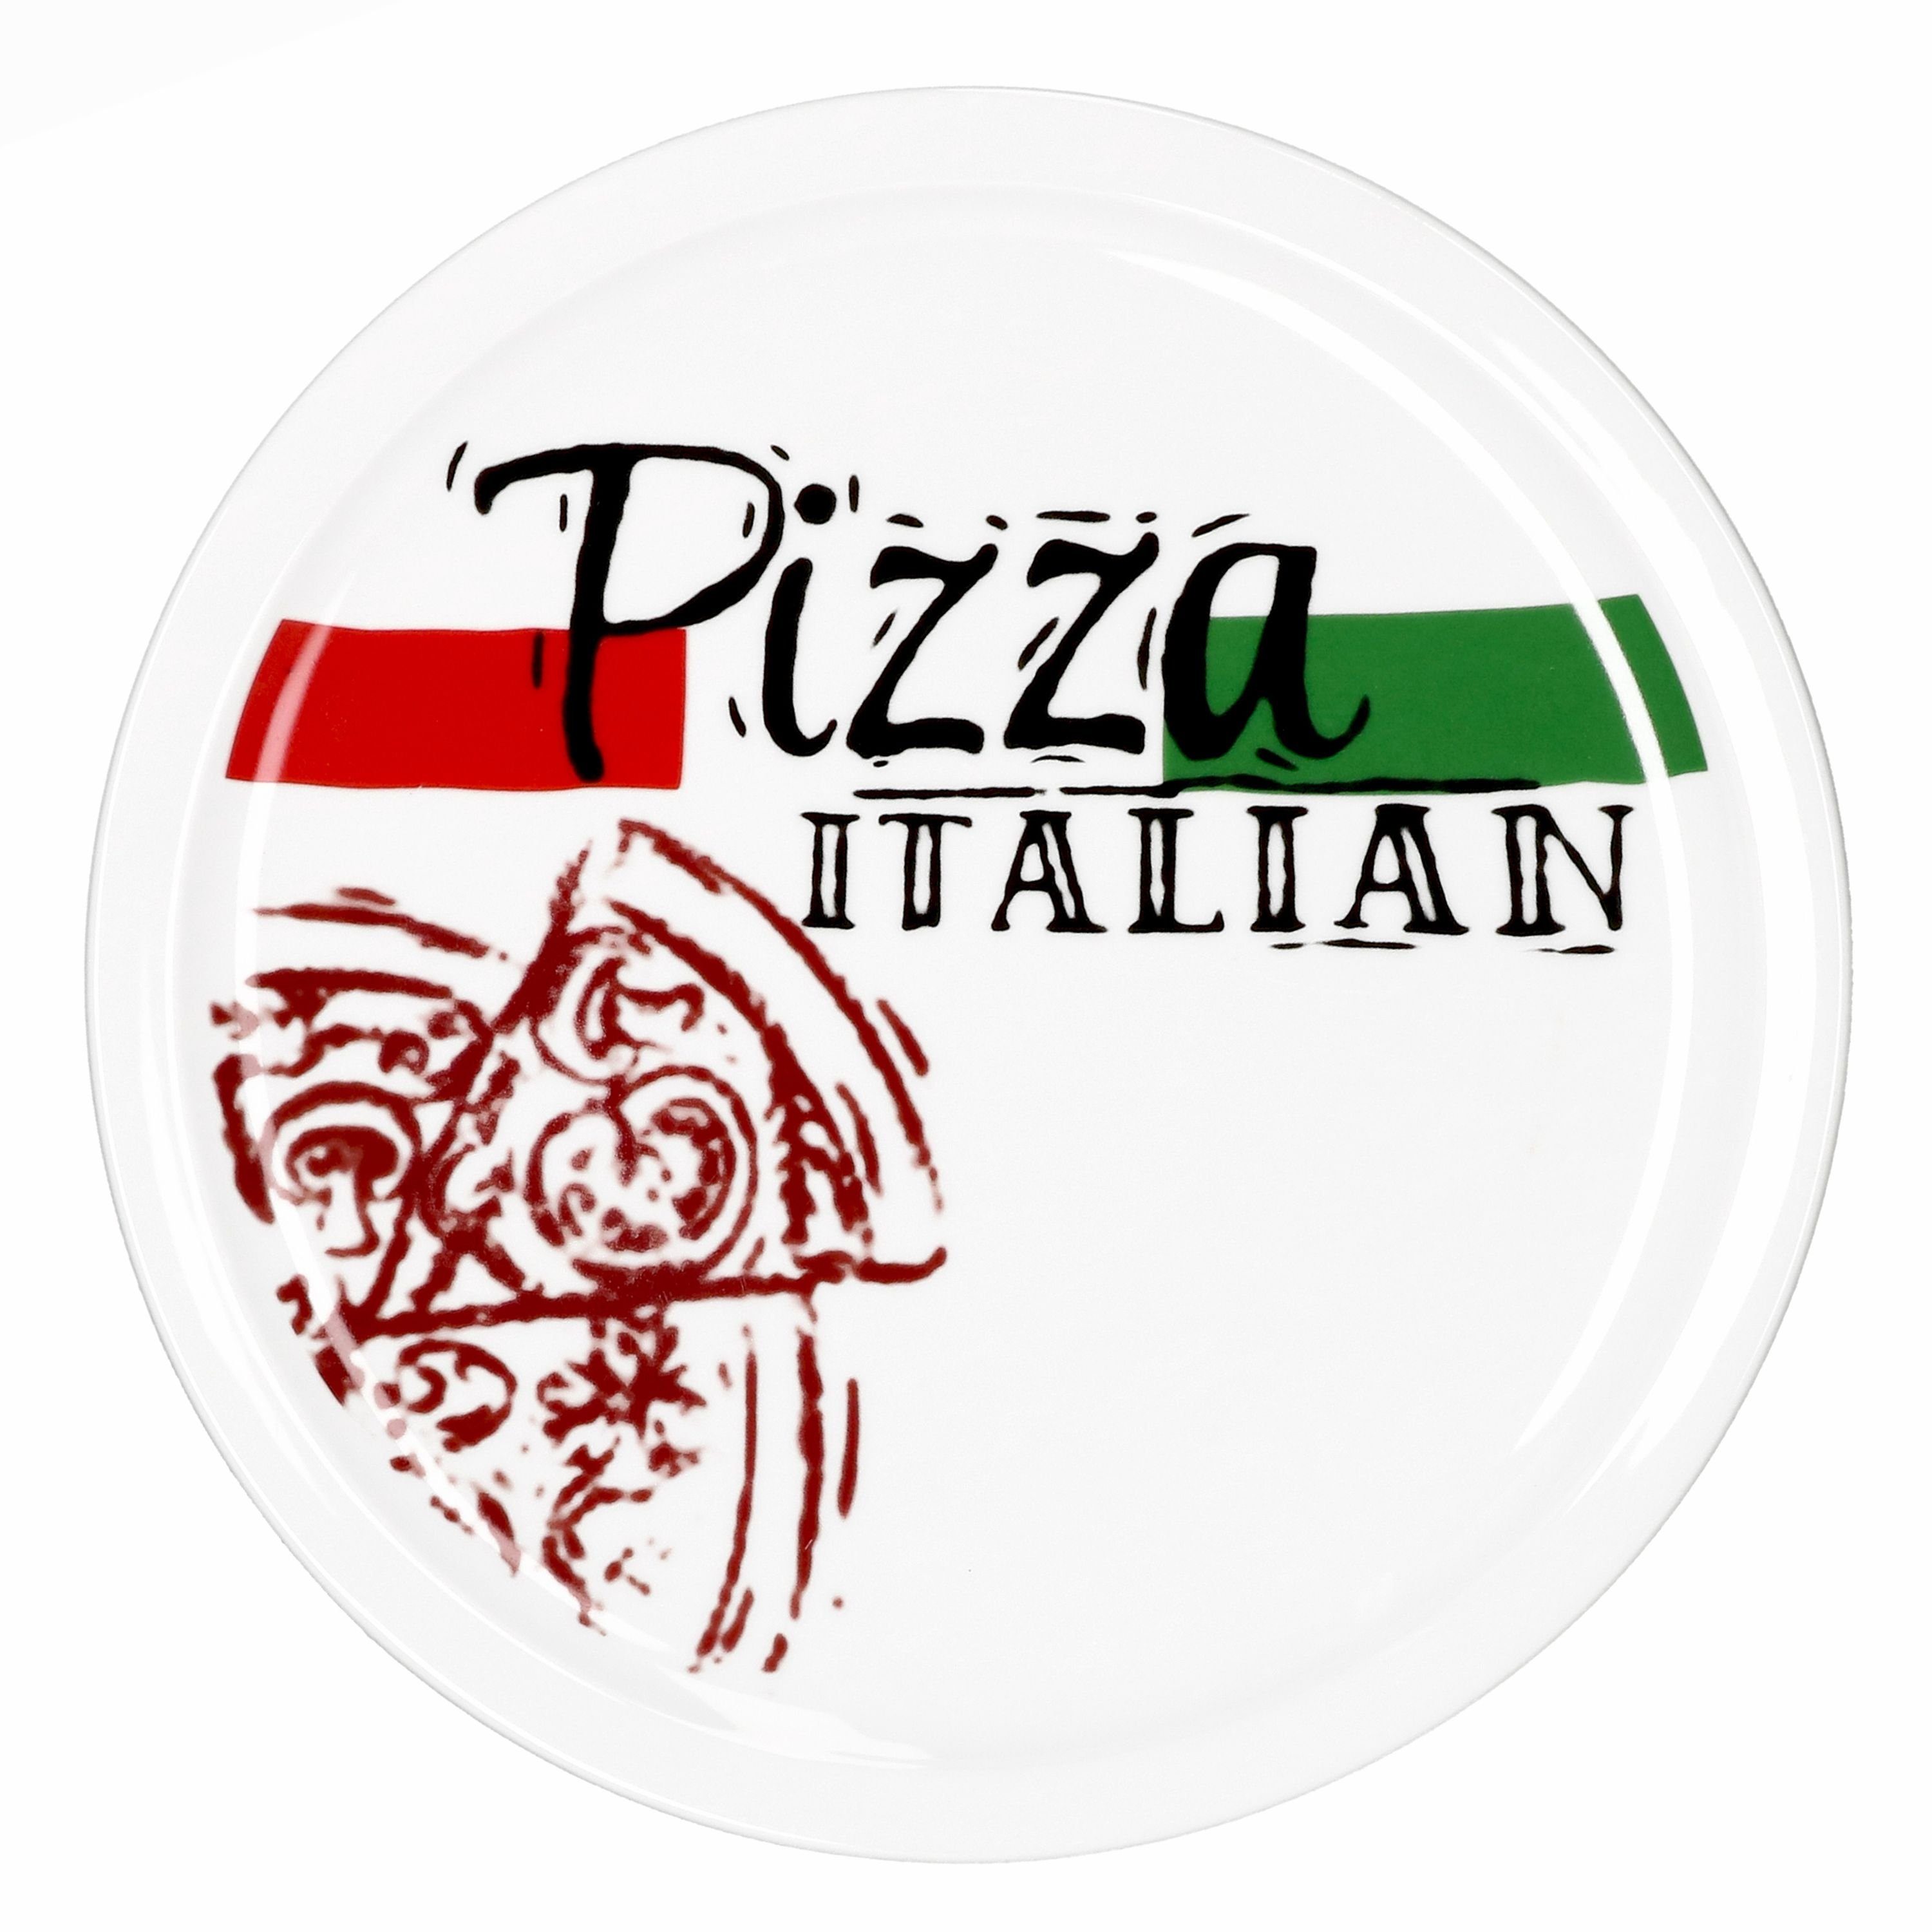 MamboCat Pizzateller 2er Set Pizzateller Italian Hot & 1x 1x Tasty + 28cm Pizza